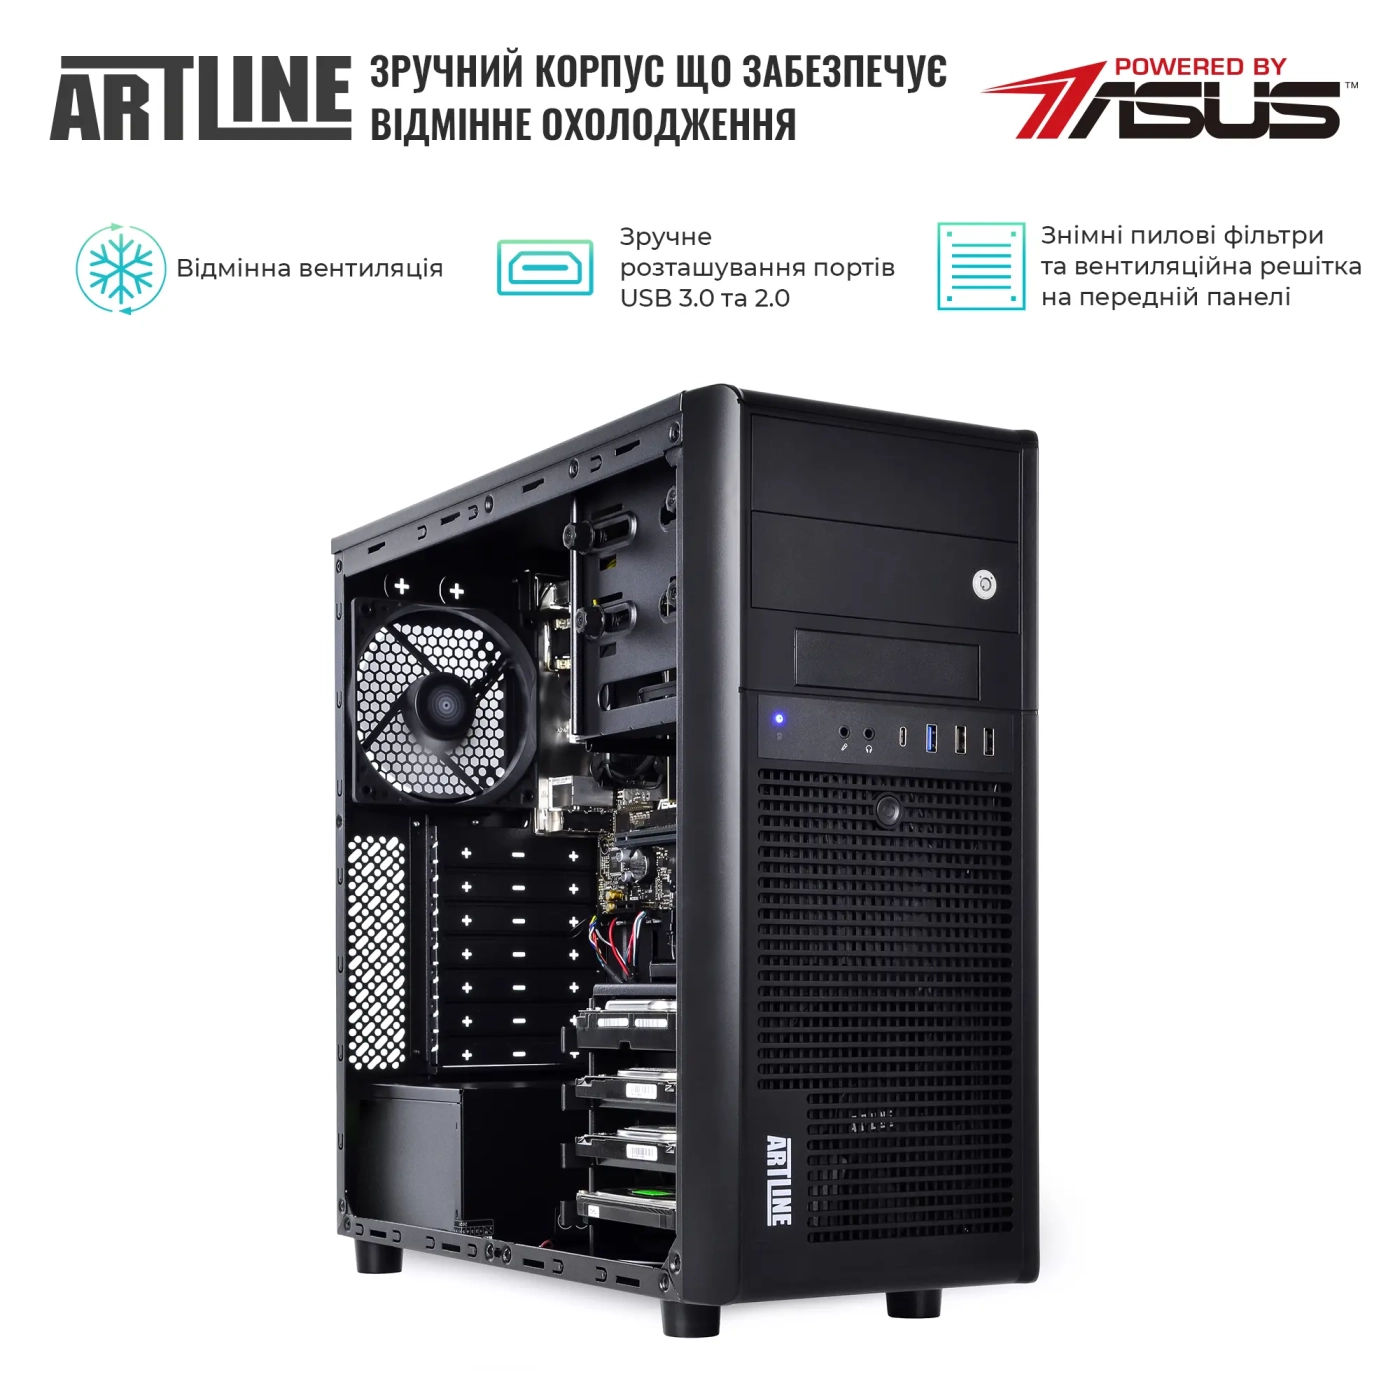 Купить Сервер ARTLINE Business T35v19 - фото 3